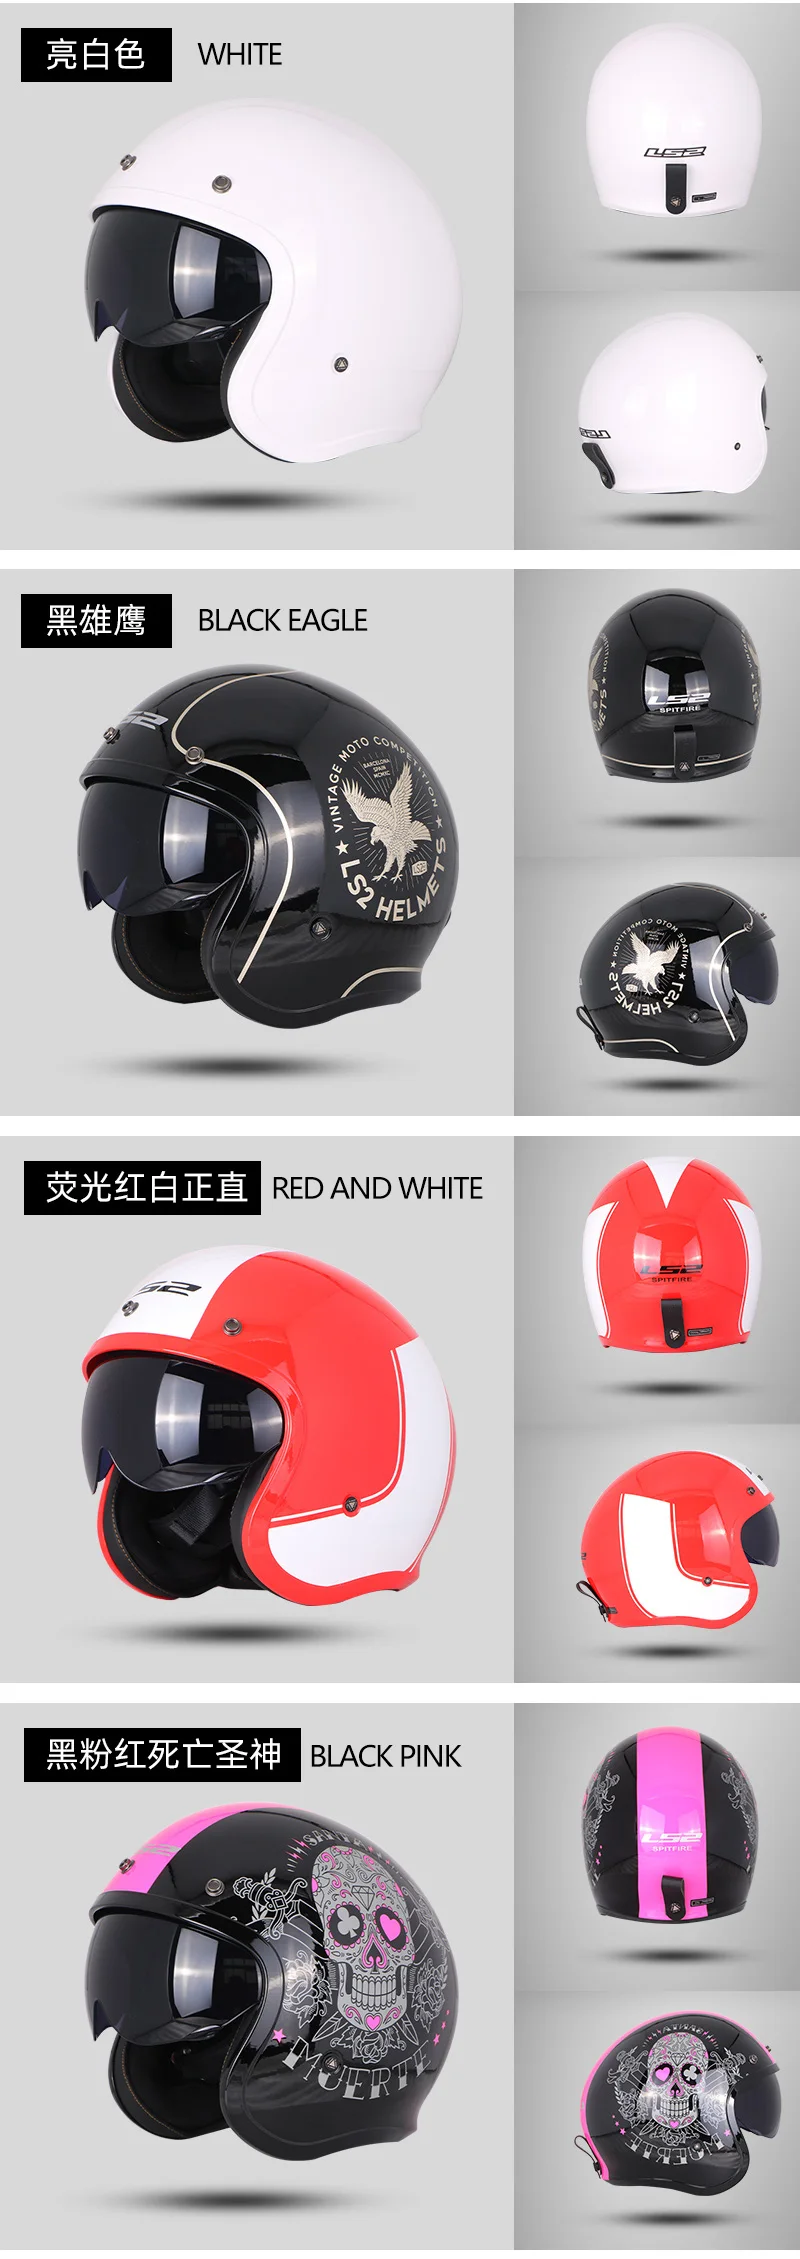 LS2 с открытым лицом мото rcycle шлем с откидным козырьком Винтаж Ретро мото 3/4 шлемы половина шлем OF599